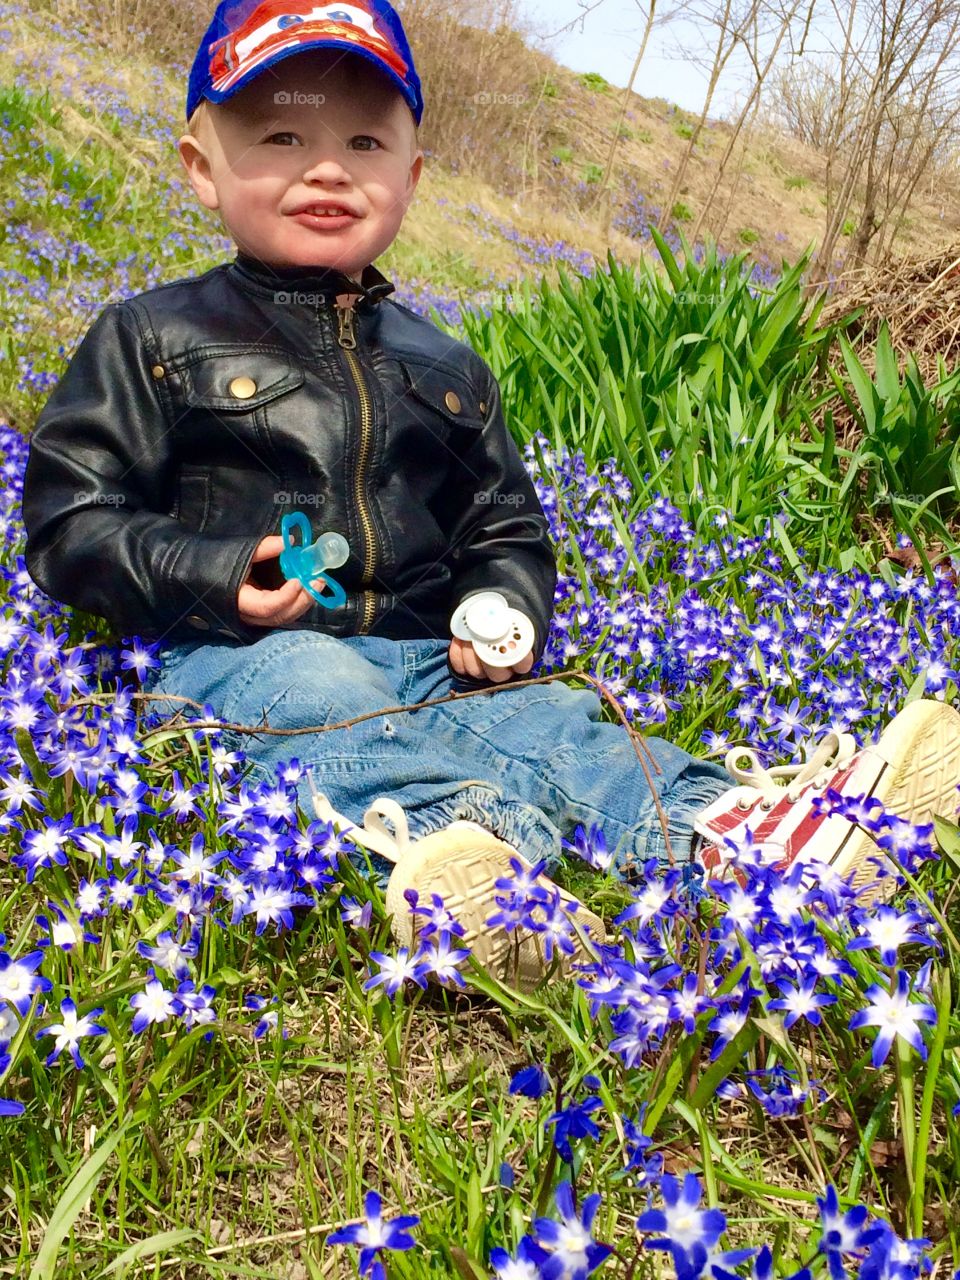 Happy in spring.. A little boy in a sea of flower.